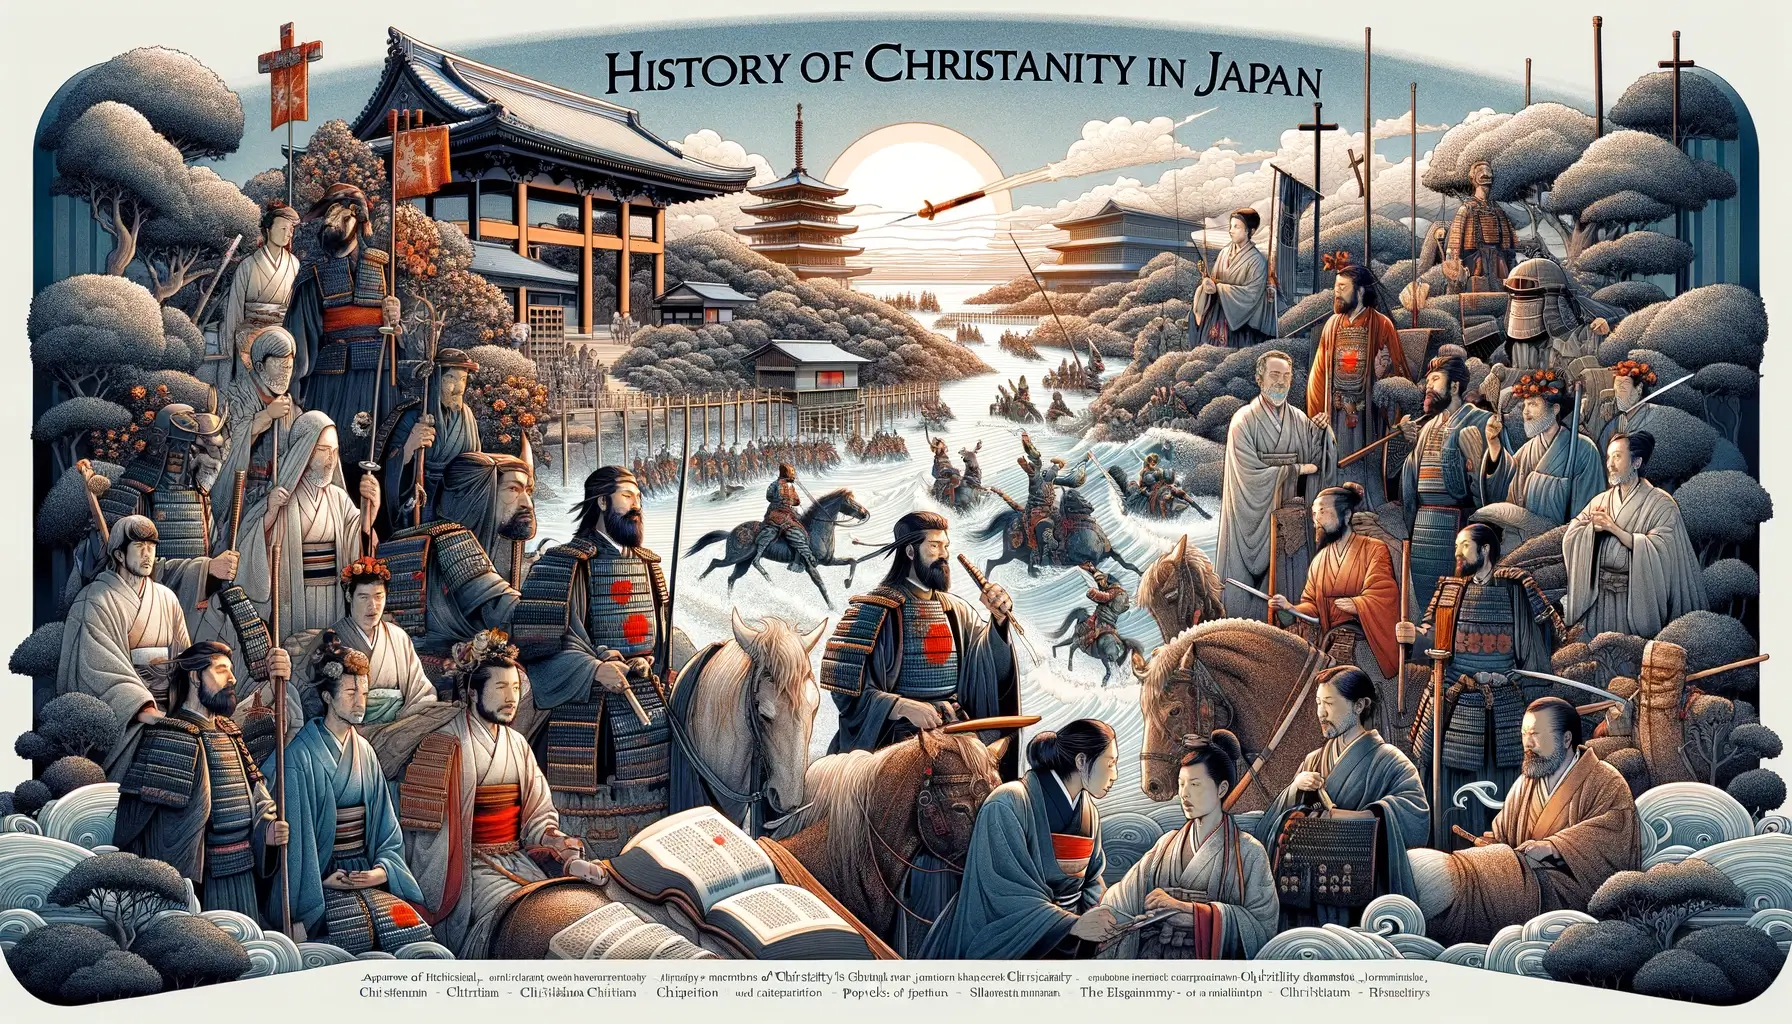 日本のキリスト教の歴史